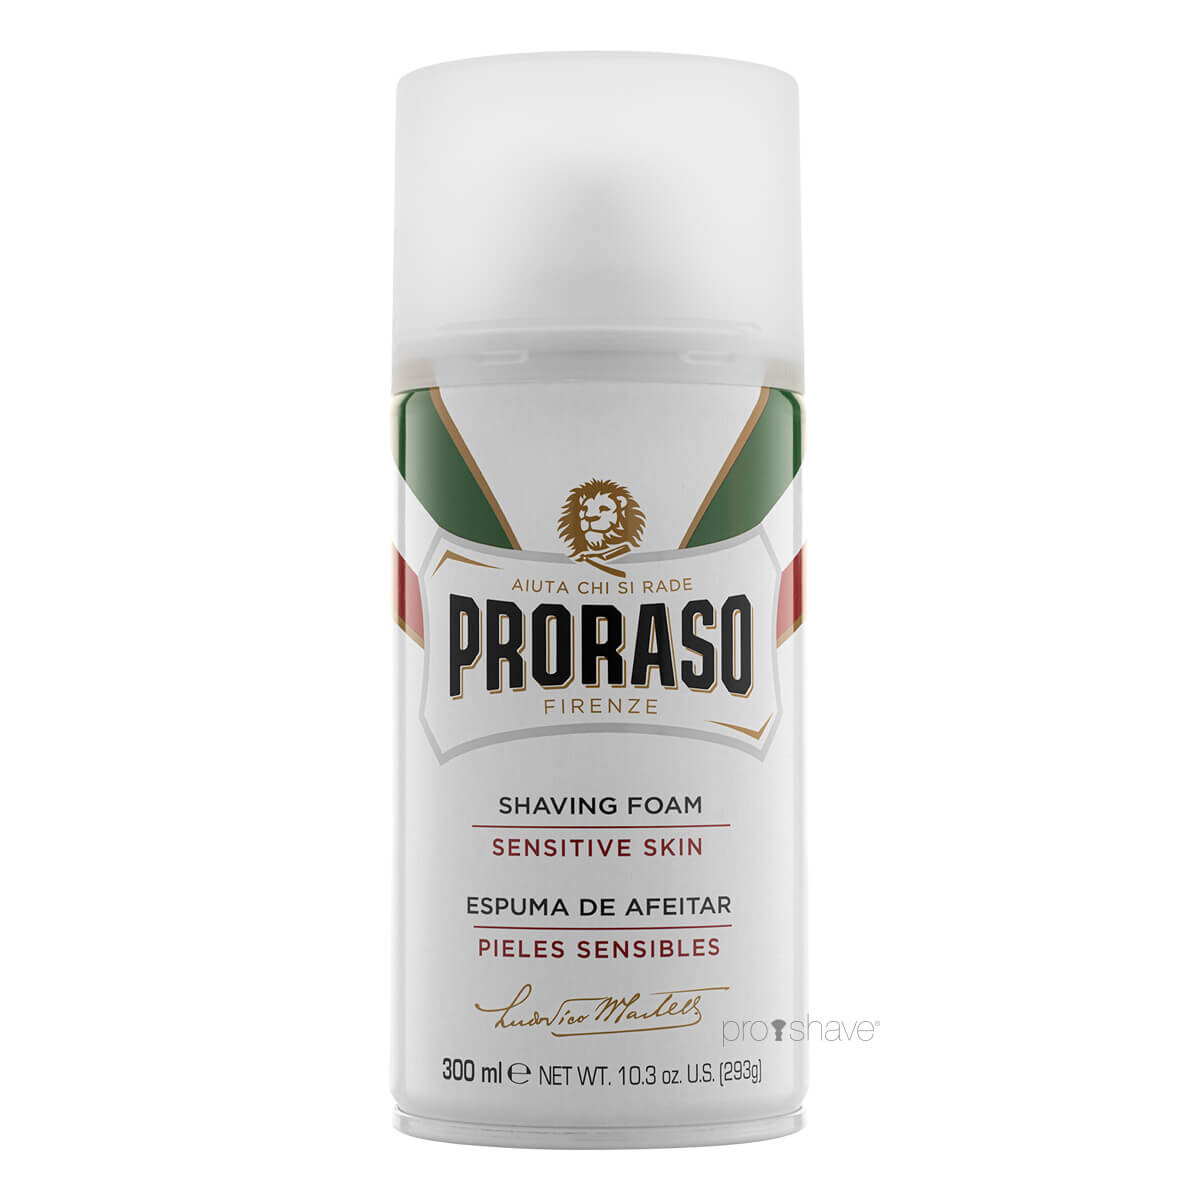 Se Proraso Barberskum - Sensitive, Grøn Te & Havre, 300 ml. hos Proshave